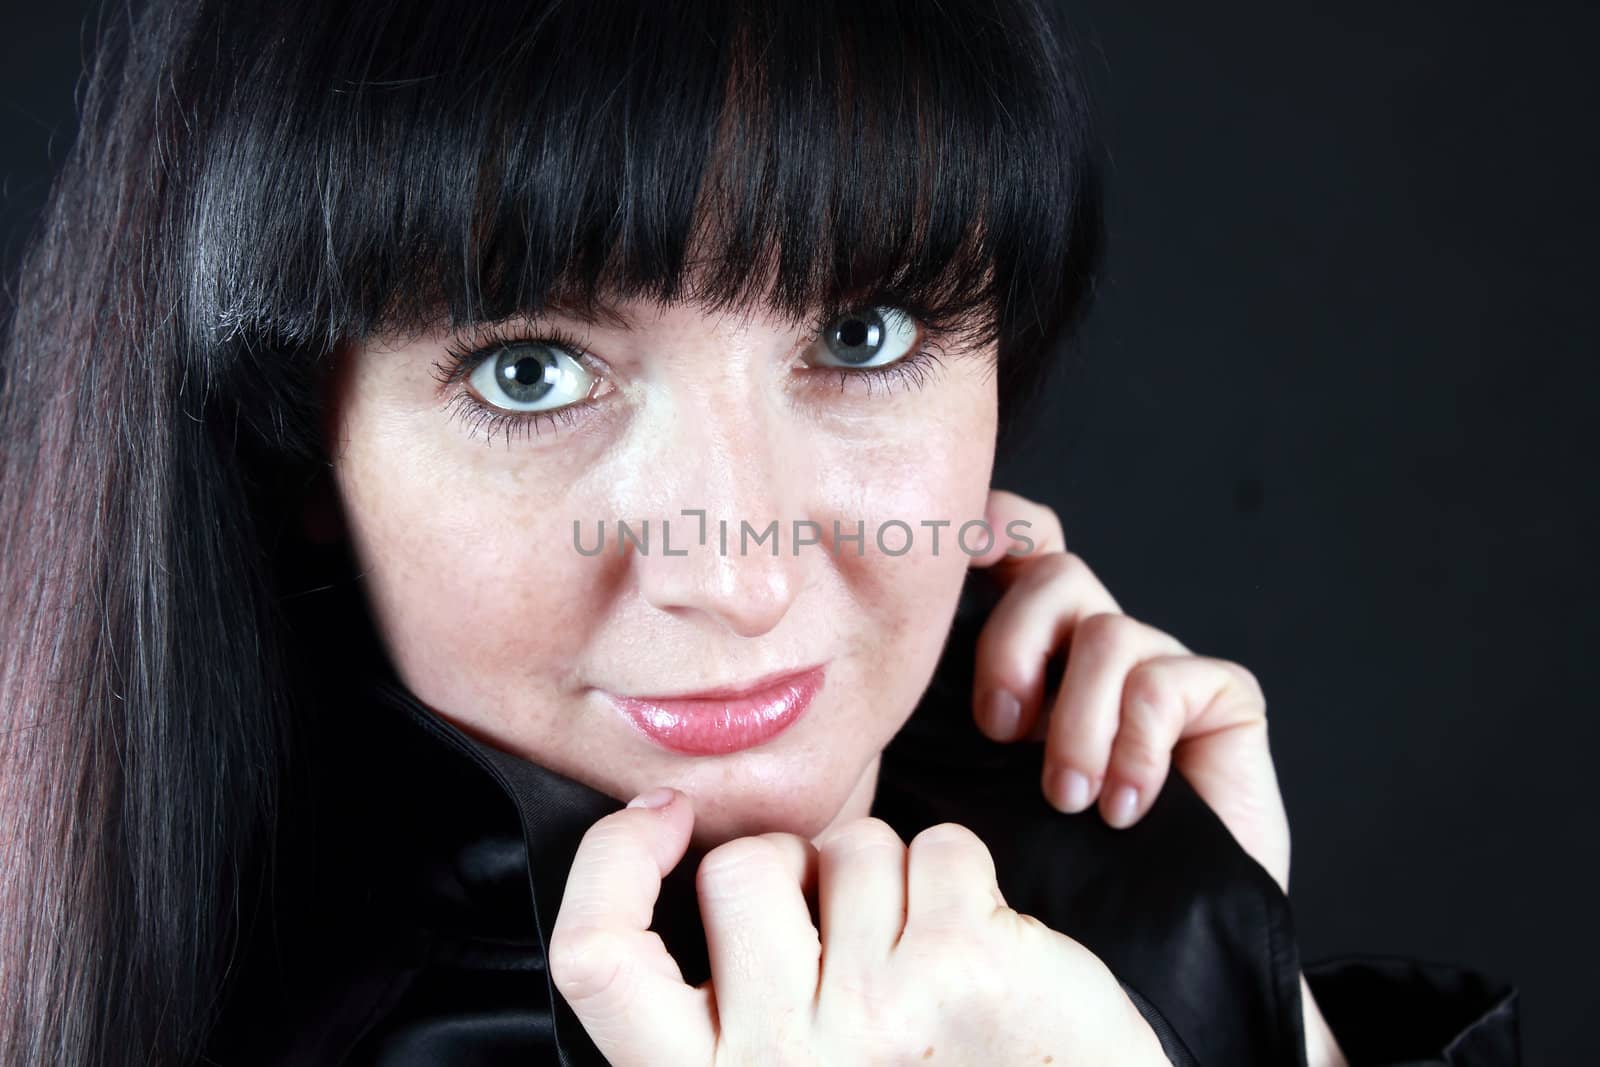 Woman in black by piotrek73